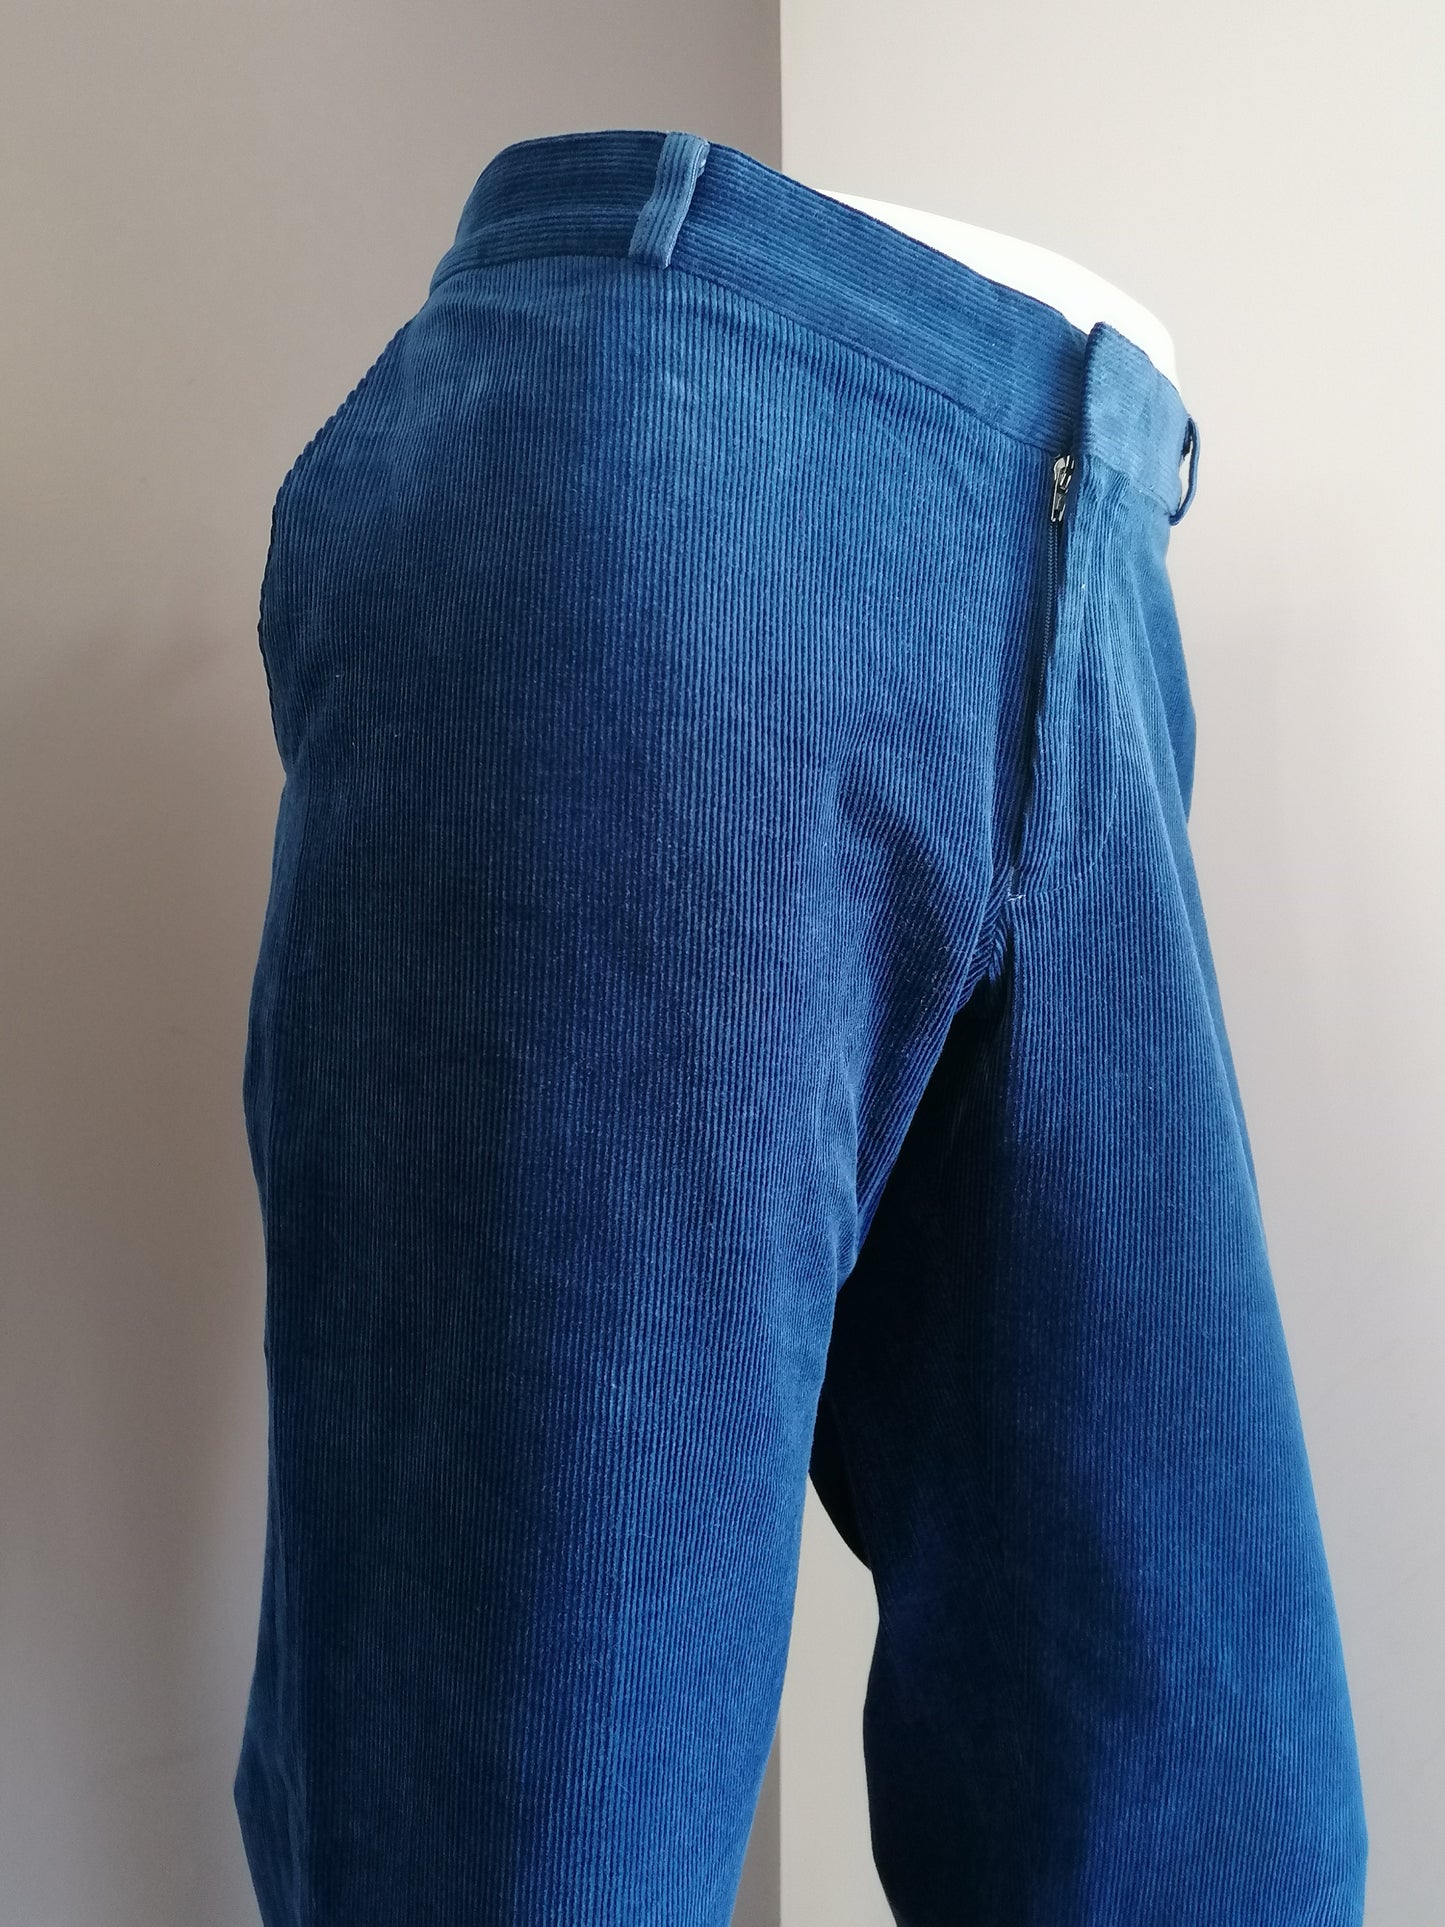 Komfort Stretch Rippenhosen / Hosen. Blau gefärbt. Größe 27 (54/l)